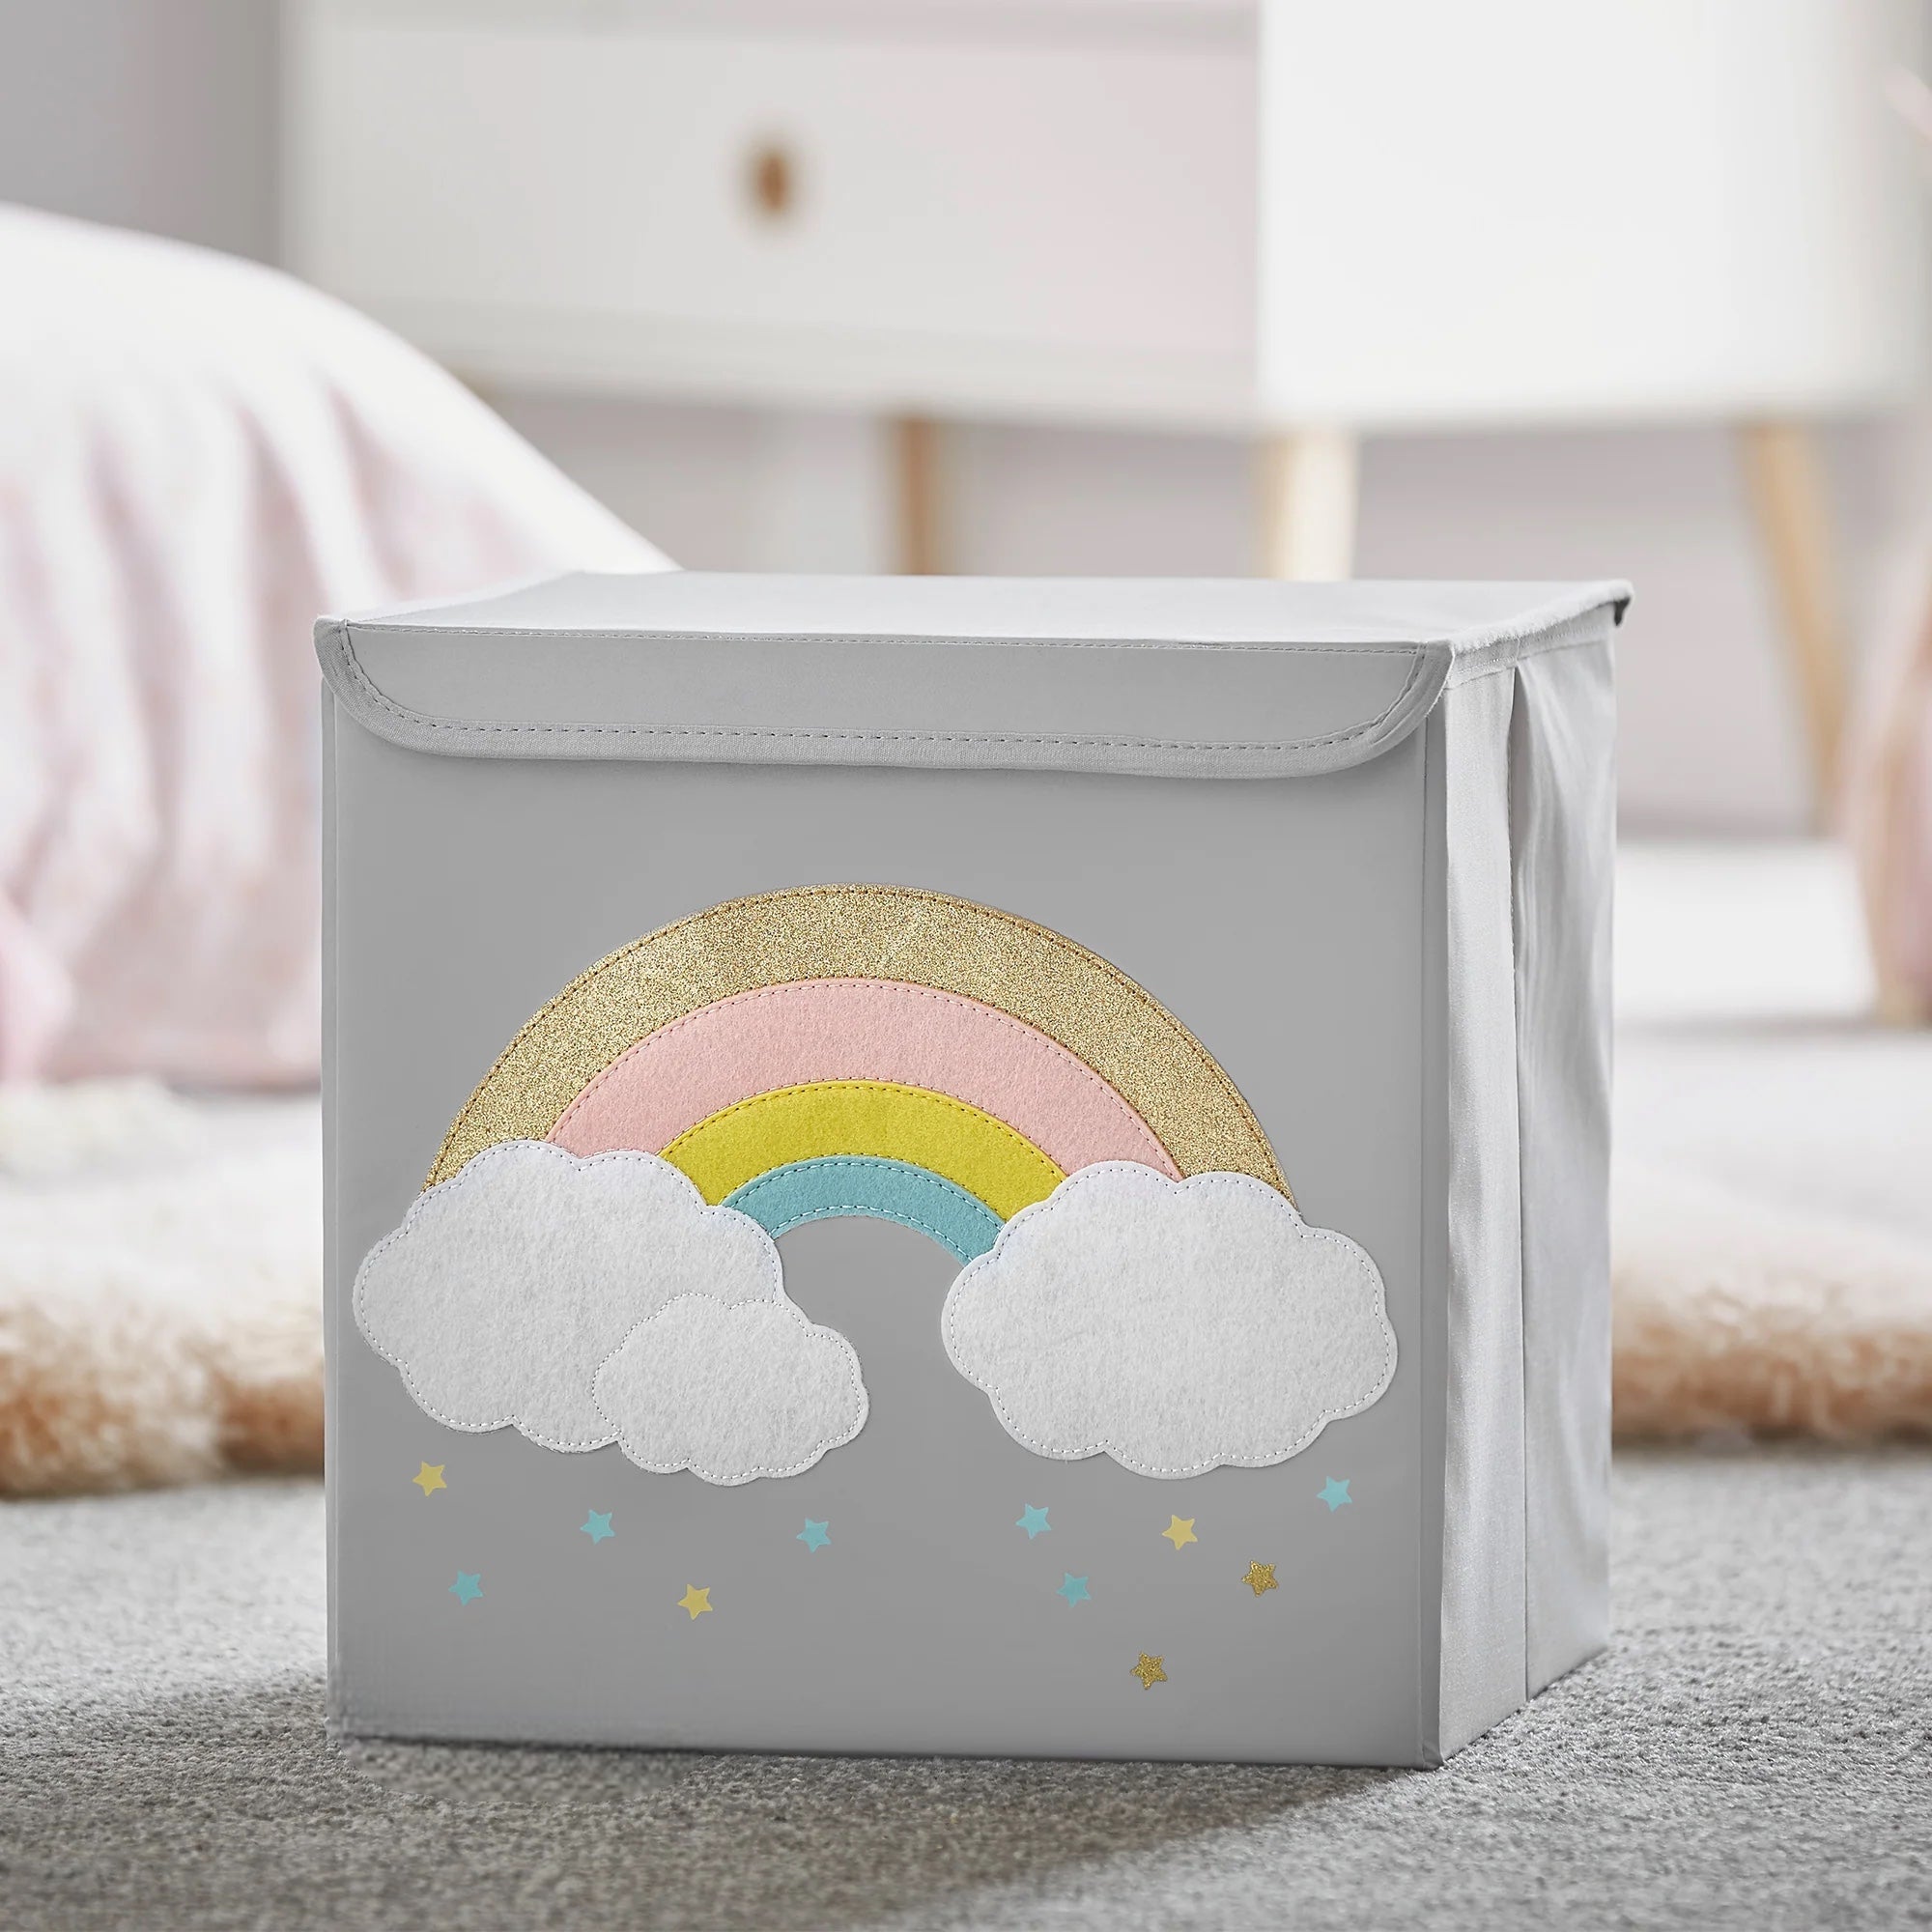 Personalized Storage Box - Rainbow